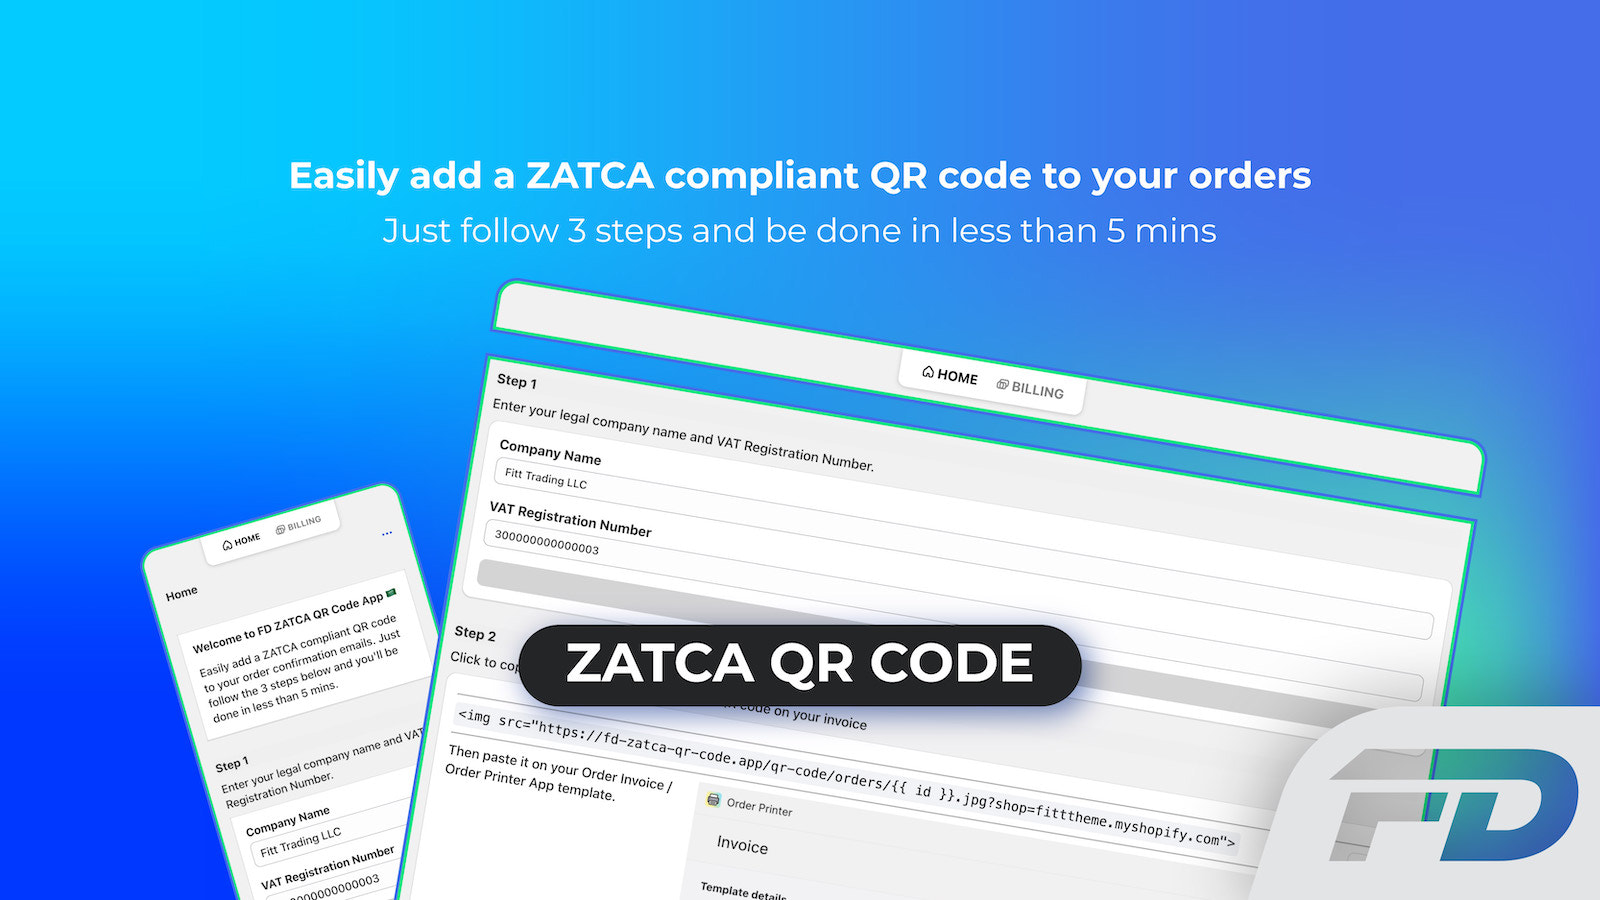 自动为您的订单生成符合ZATCA / Fatoora的QR码